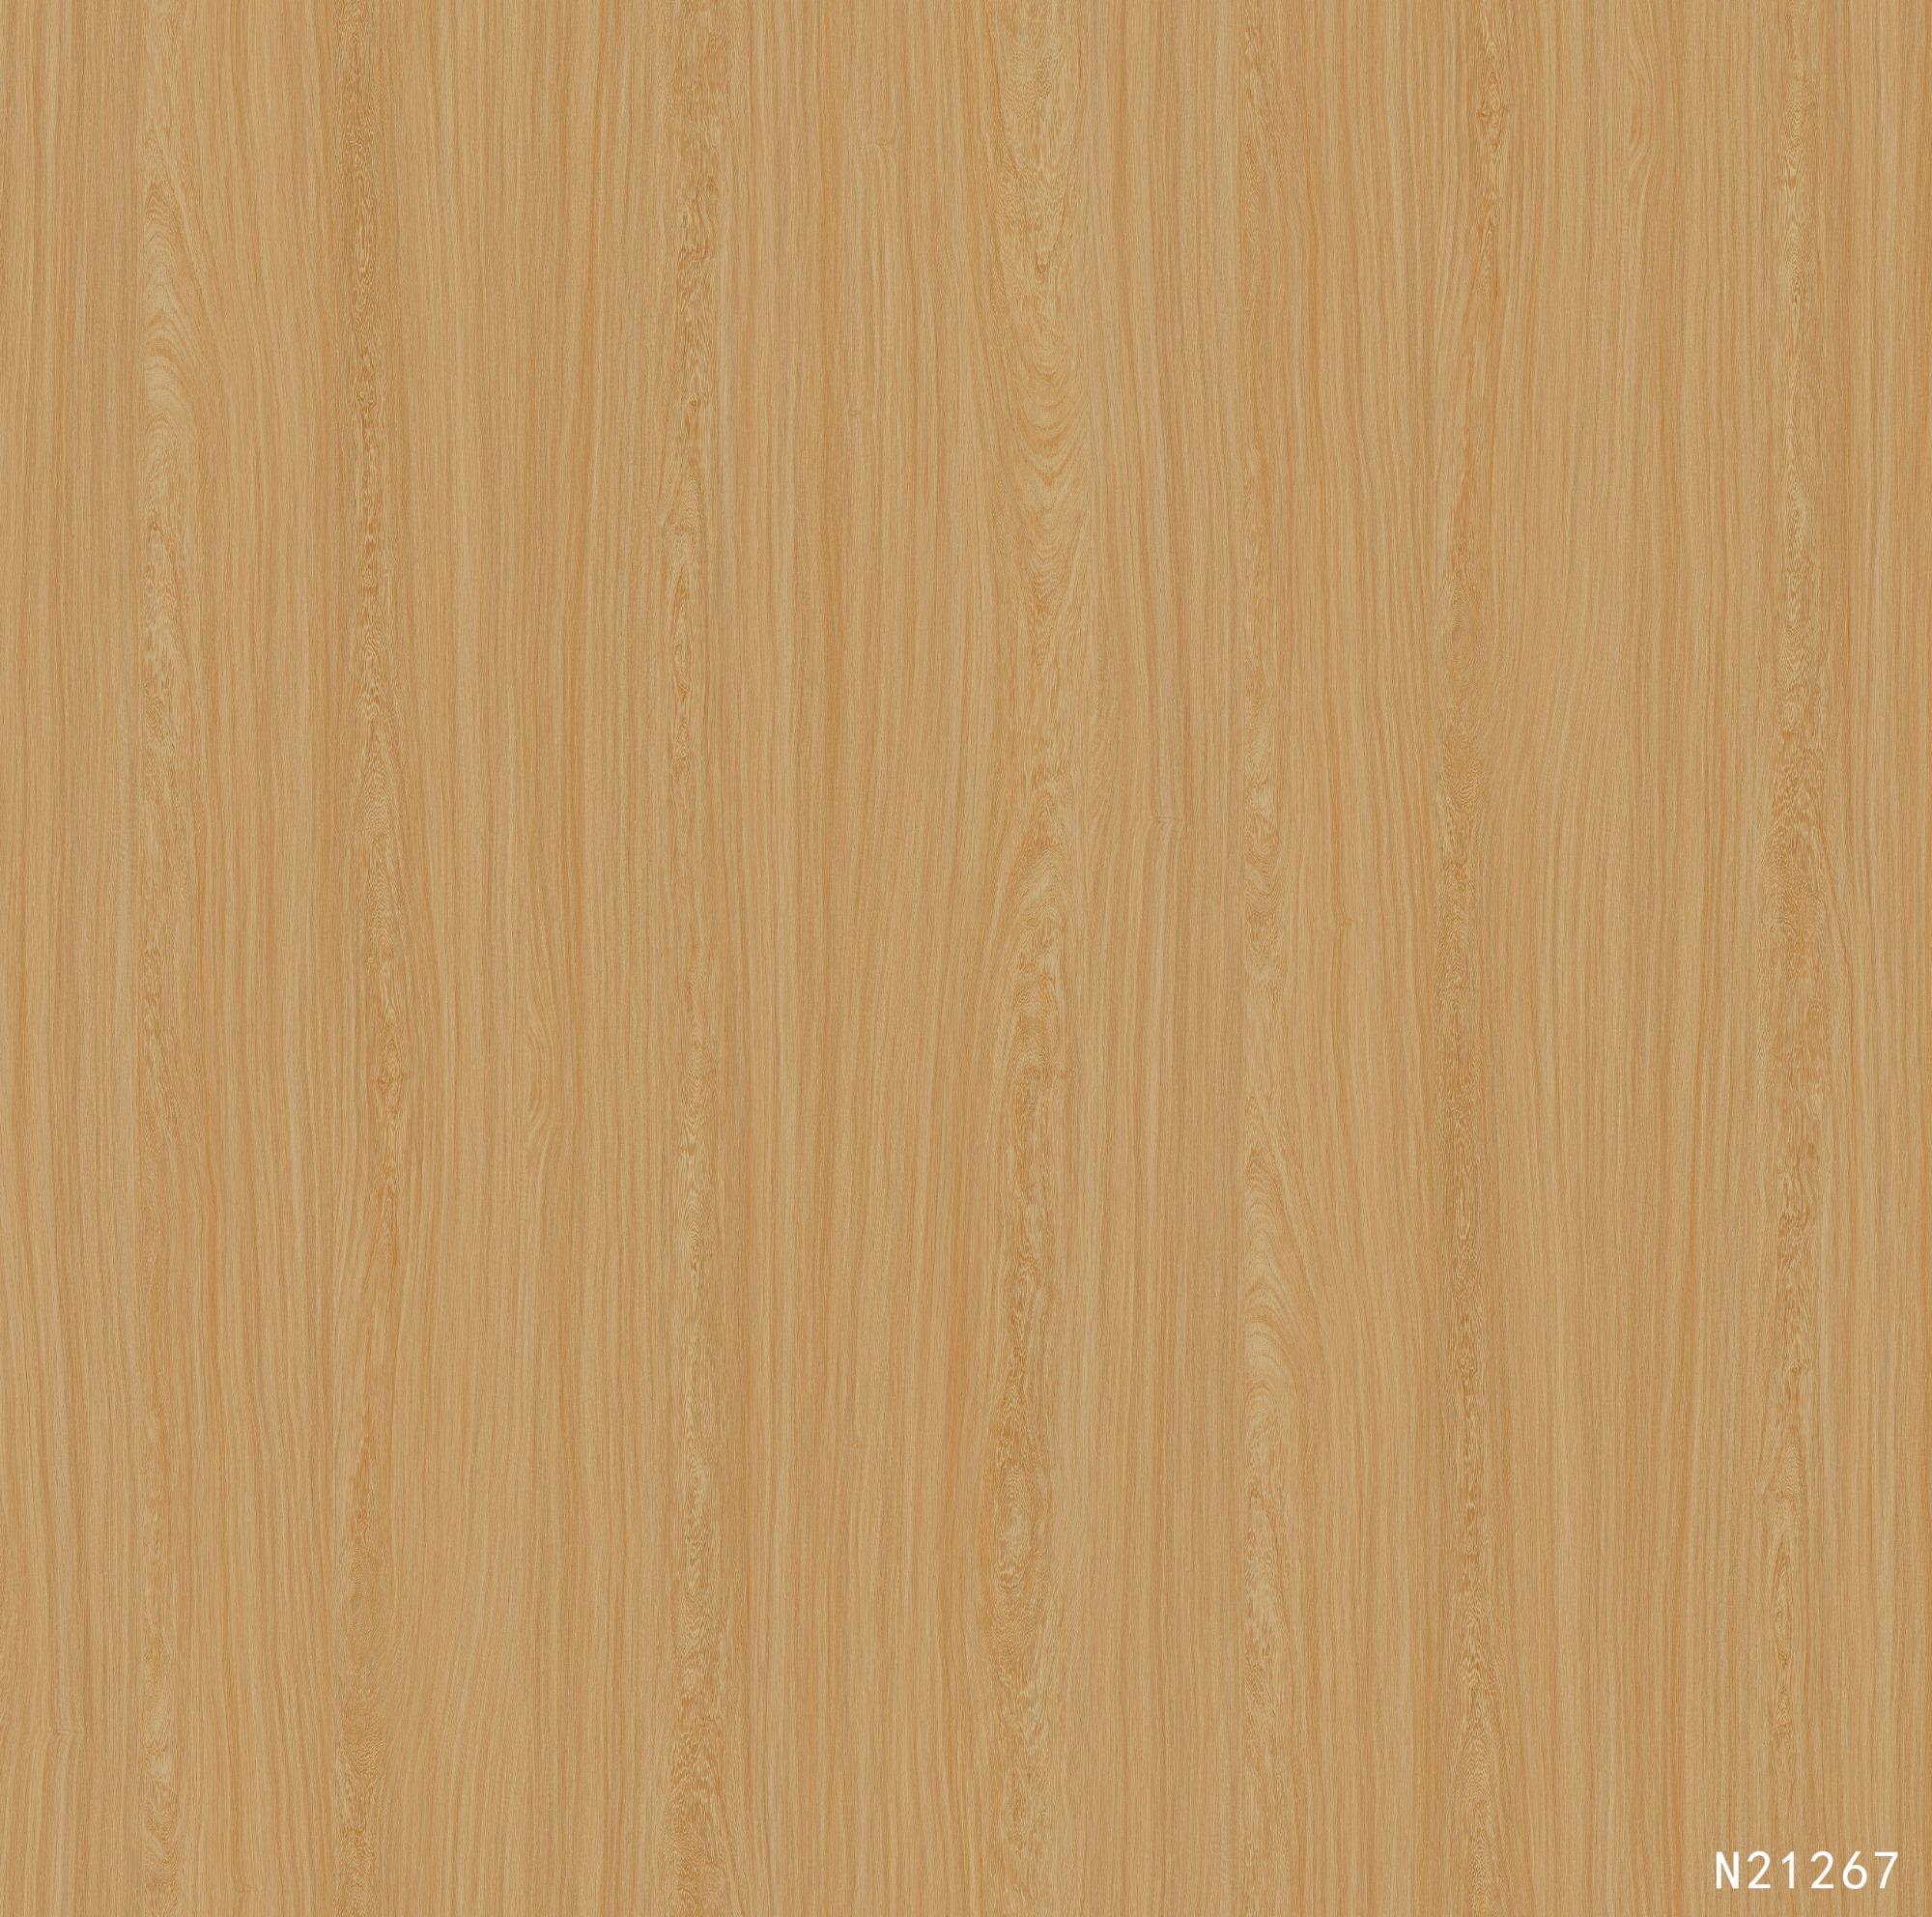 N21267 Melamine paper with wood grain